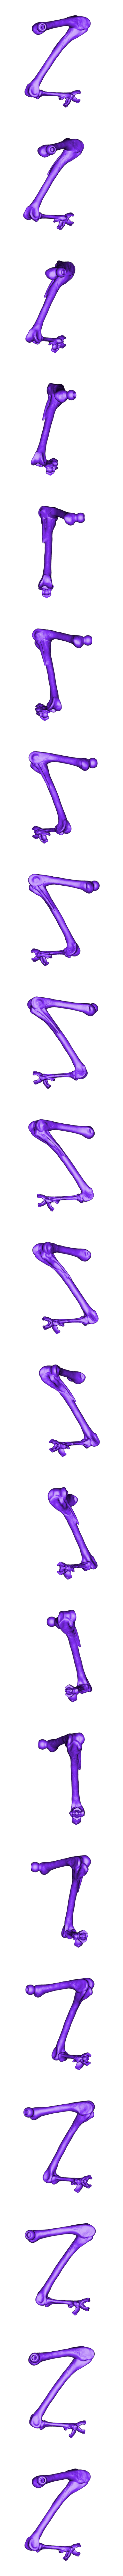 Leg_MacowL.stl Télécharger fichier STL gratuit Squelette d'airains d'oiseaux • Objet à imprimer en 3D, HarryHistory